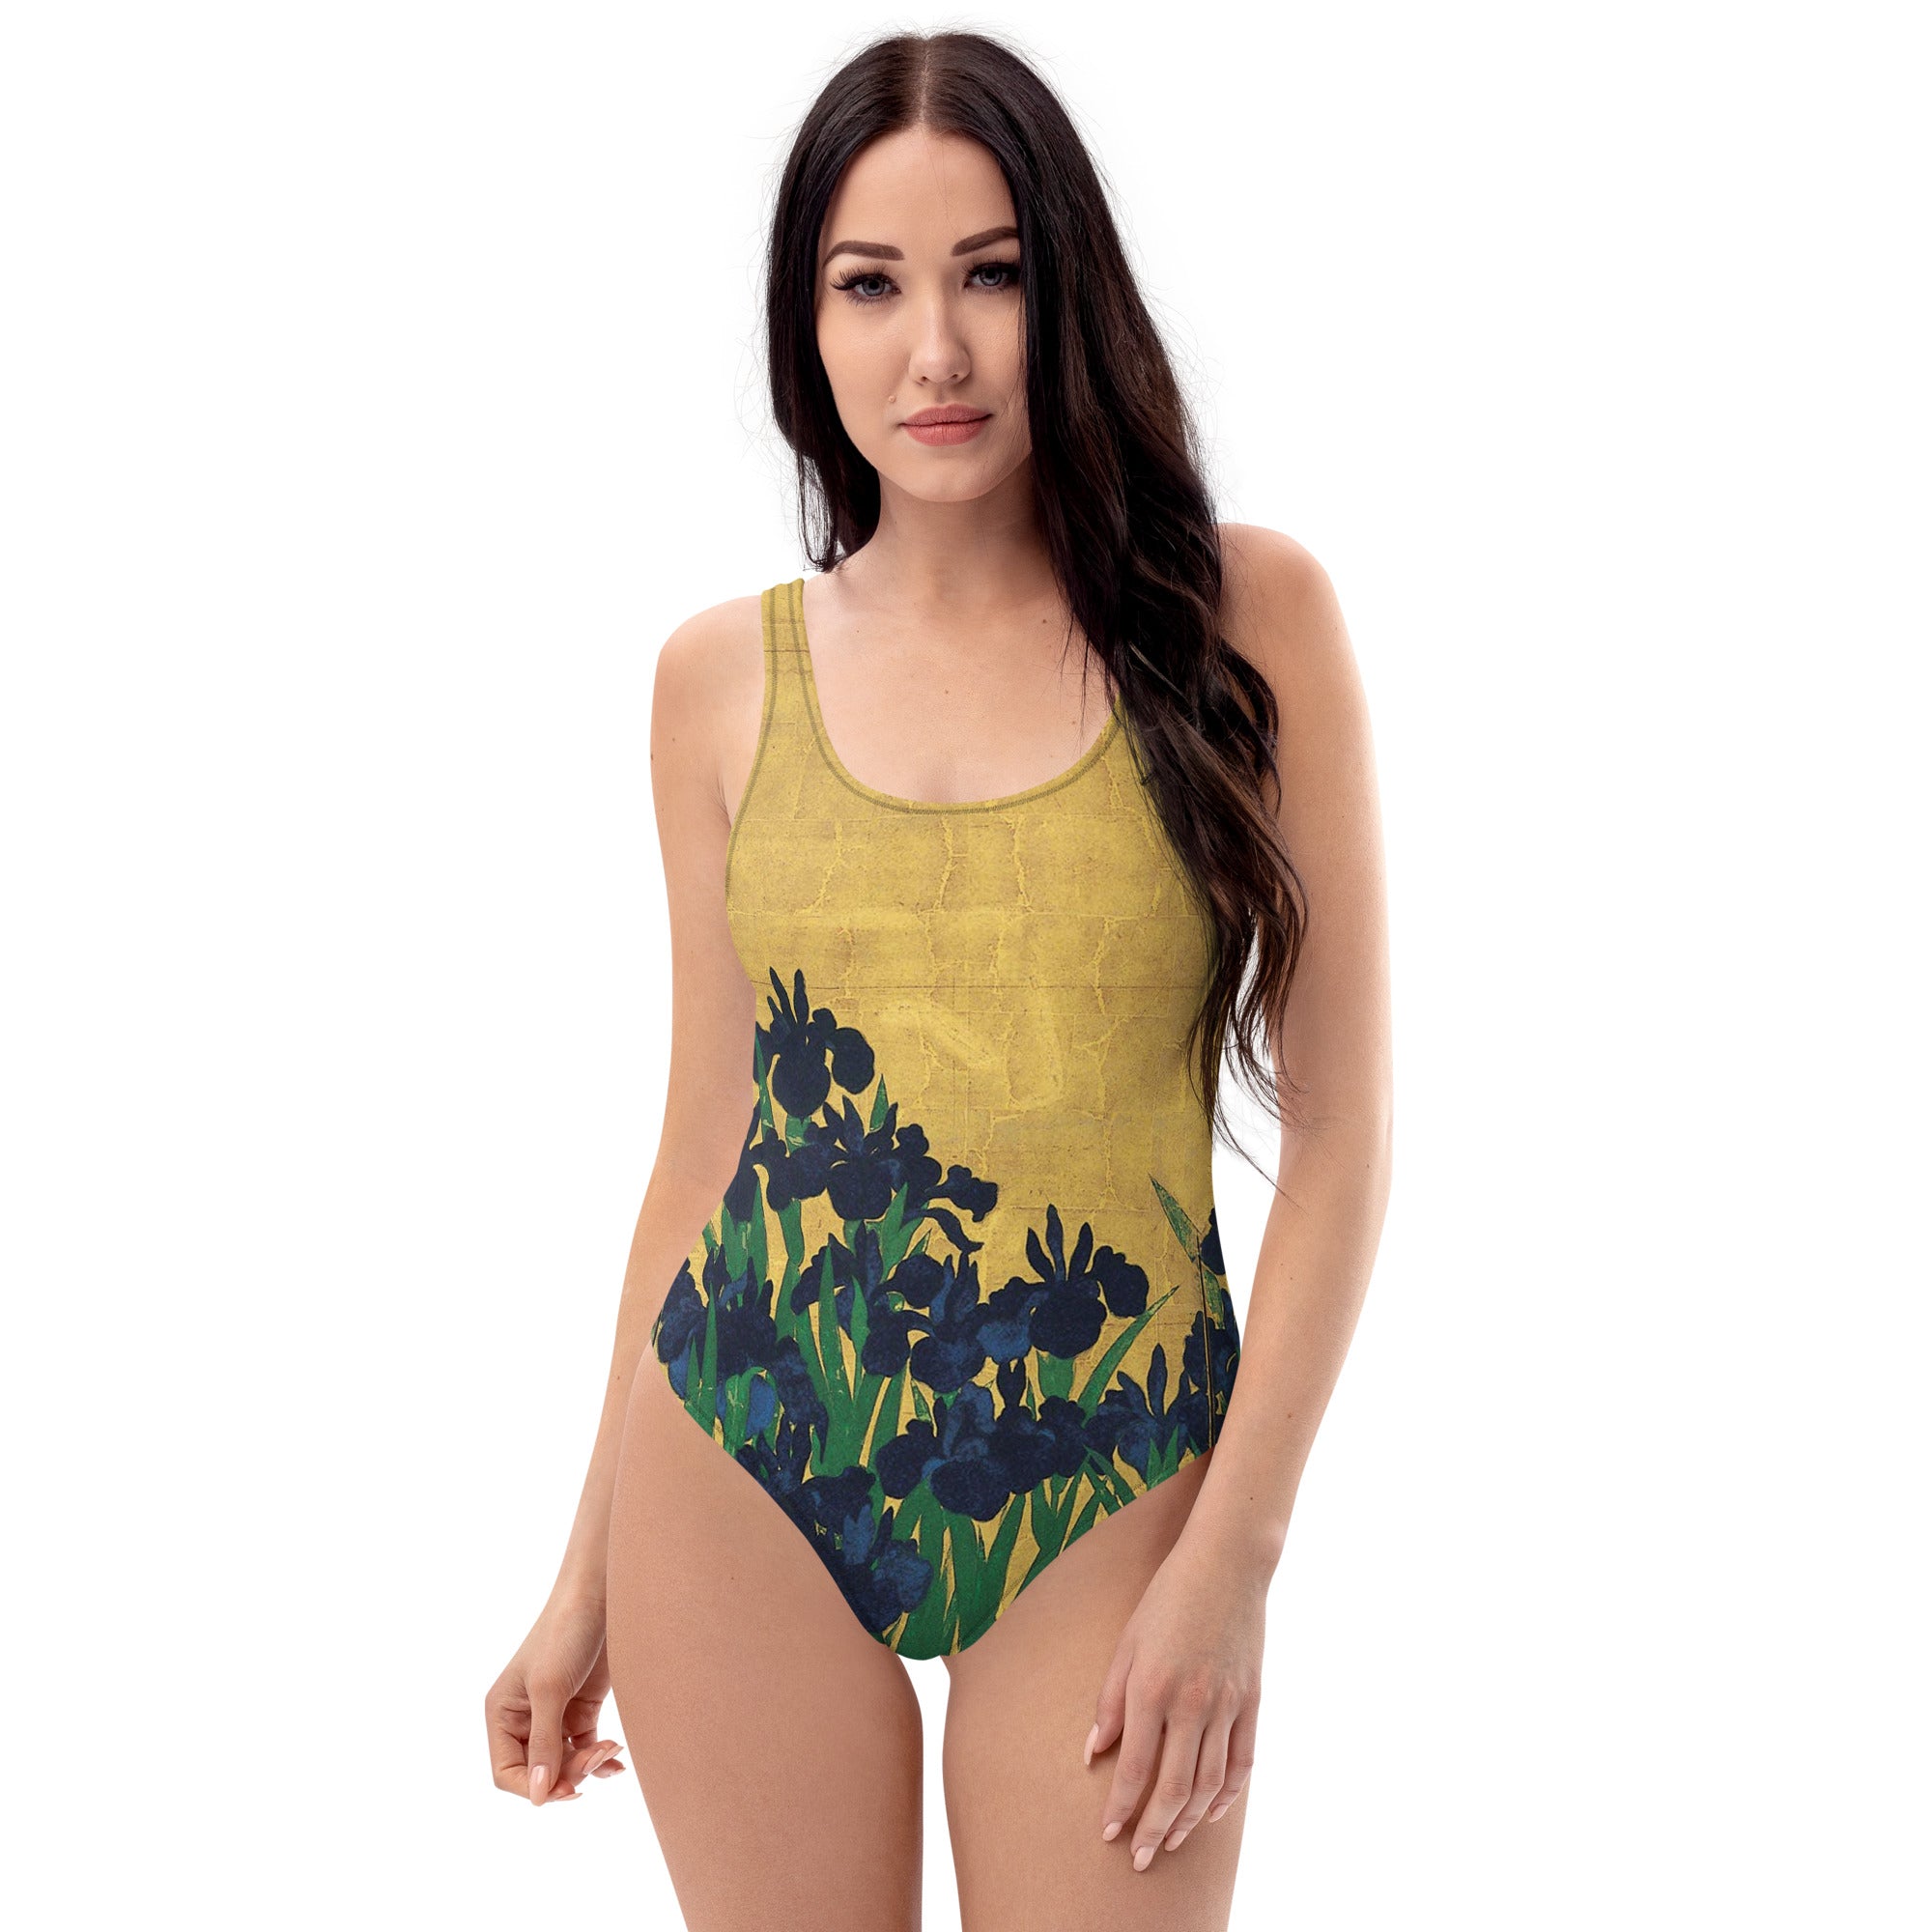 Ogata Kōrin ‘Irises’ Famous Painting Swimsuit | Premium Art One Piece Swimsuit